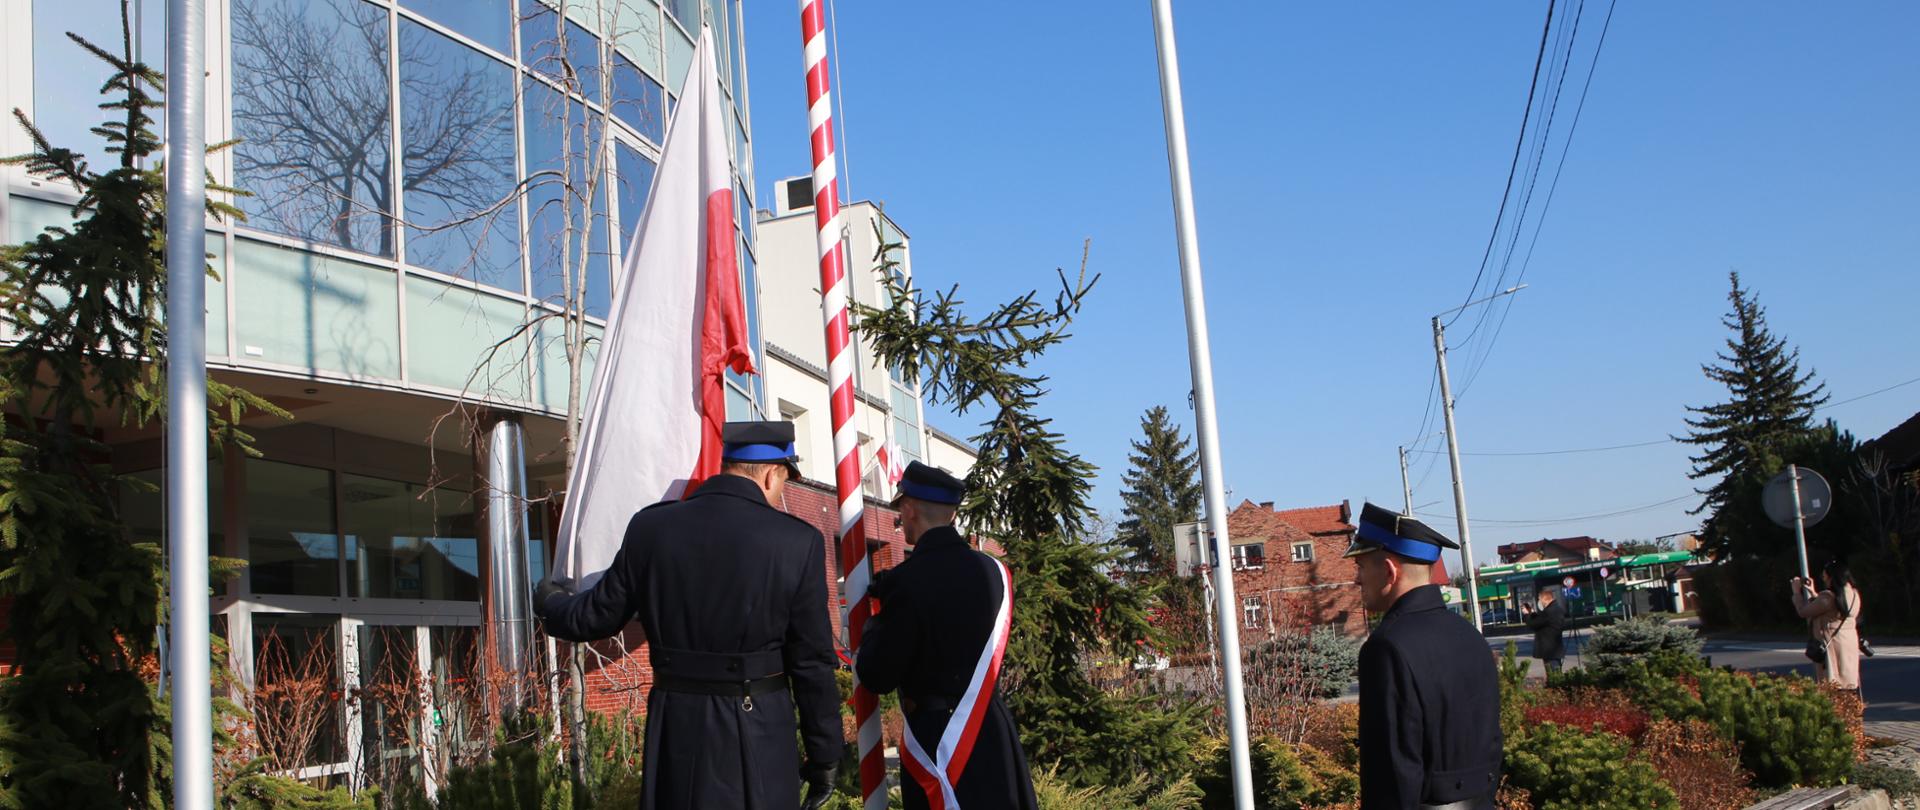 Trzech strażaków w mundurach wyjściowych zakłada flagę państwową na maszt. Uroczystość związana jest z Narodowym Dniem Niepodległości i odśpiewaniem hymnu państwowego. Na drugim planie budynek strażnicy.